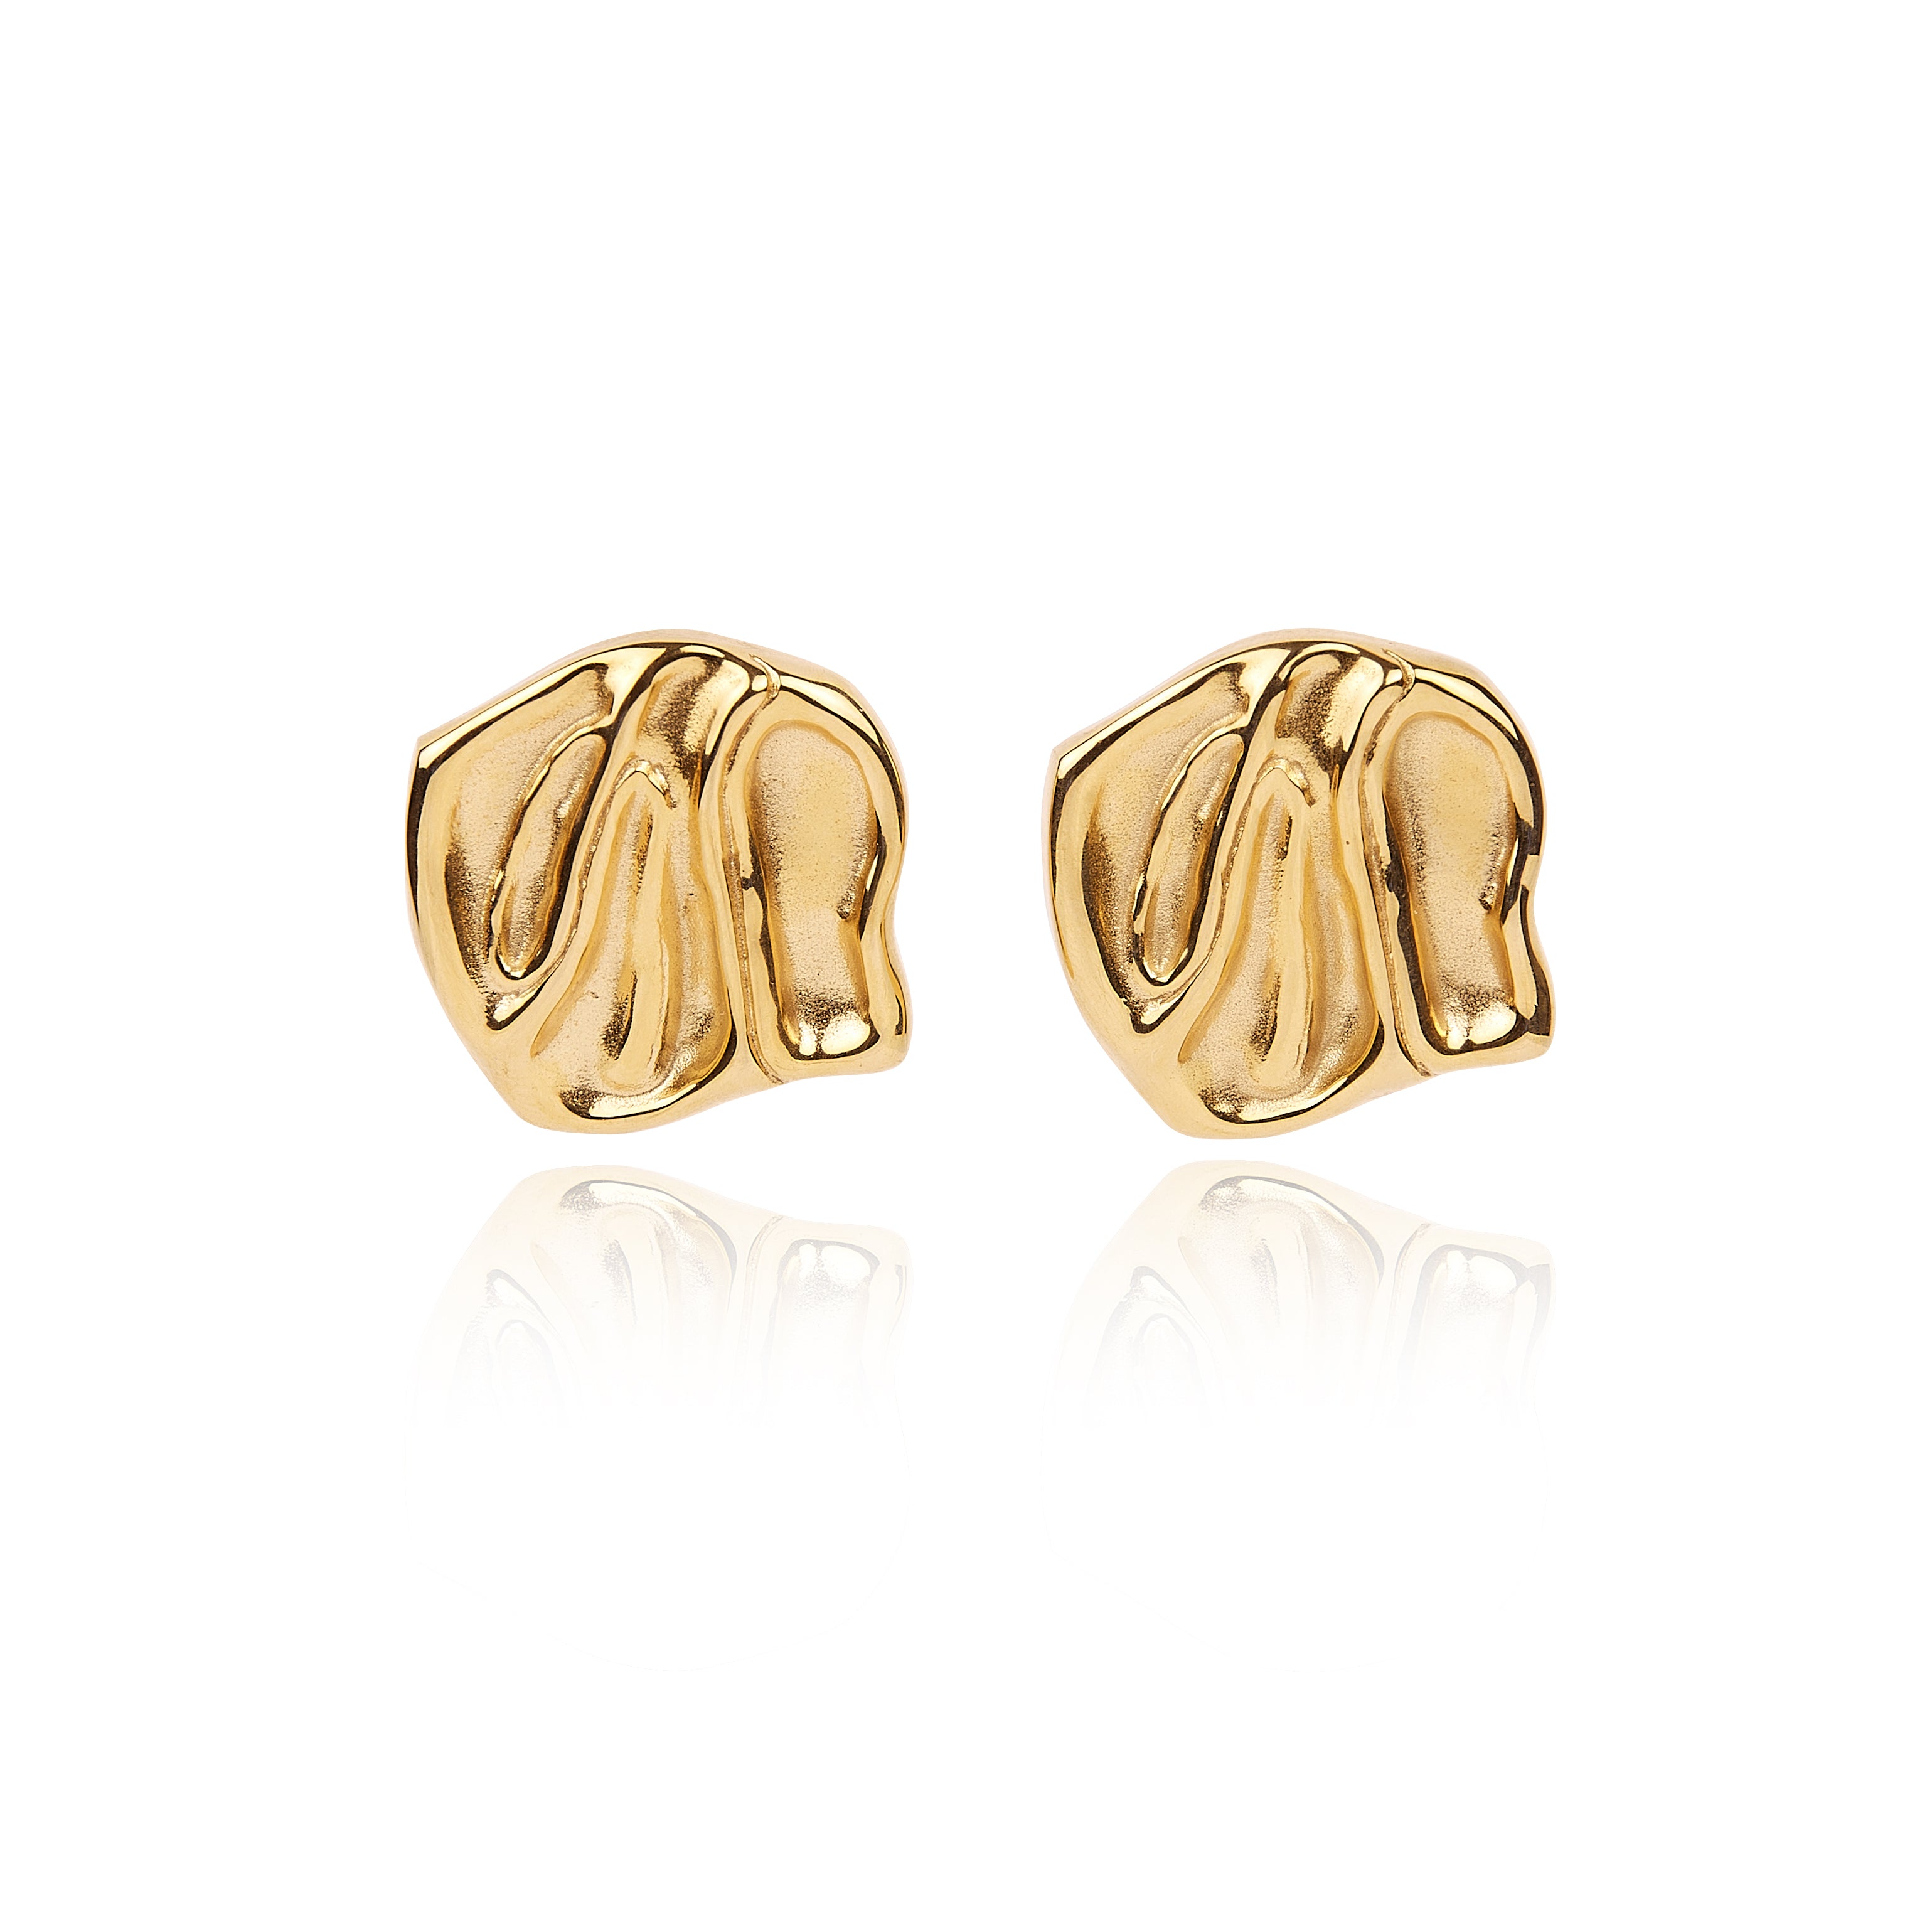 Tseatjewelry Women's Gold Daisy Earrings